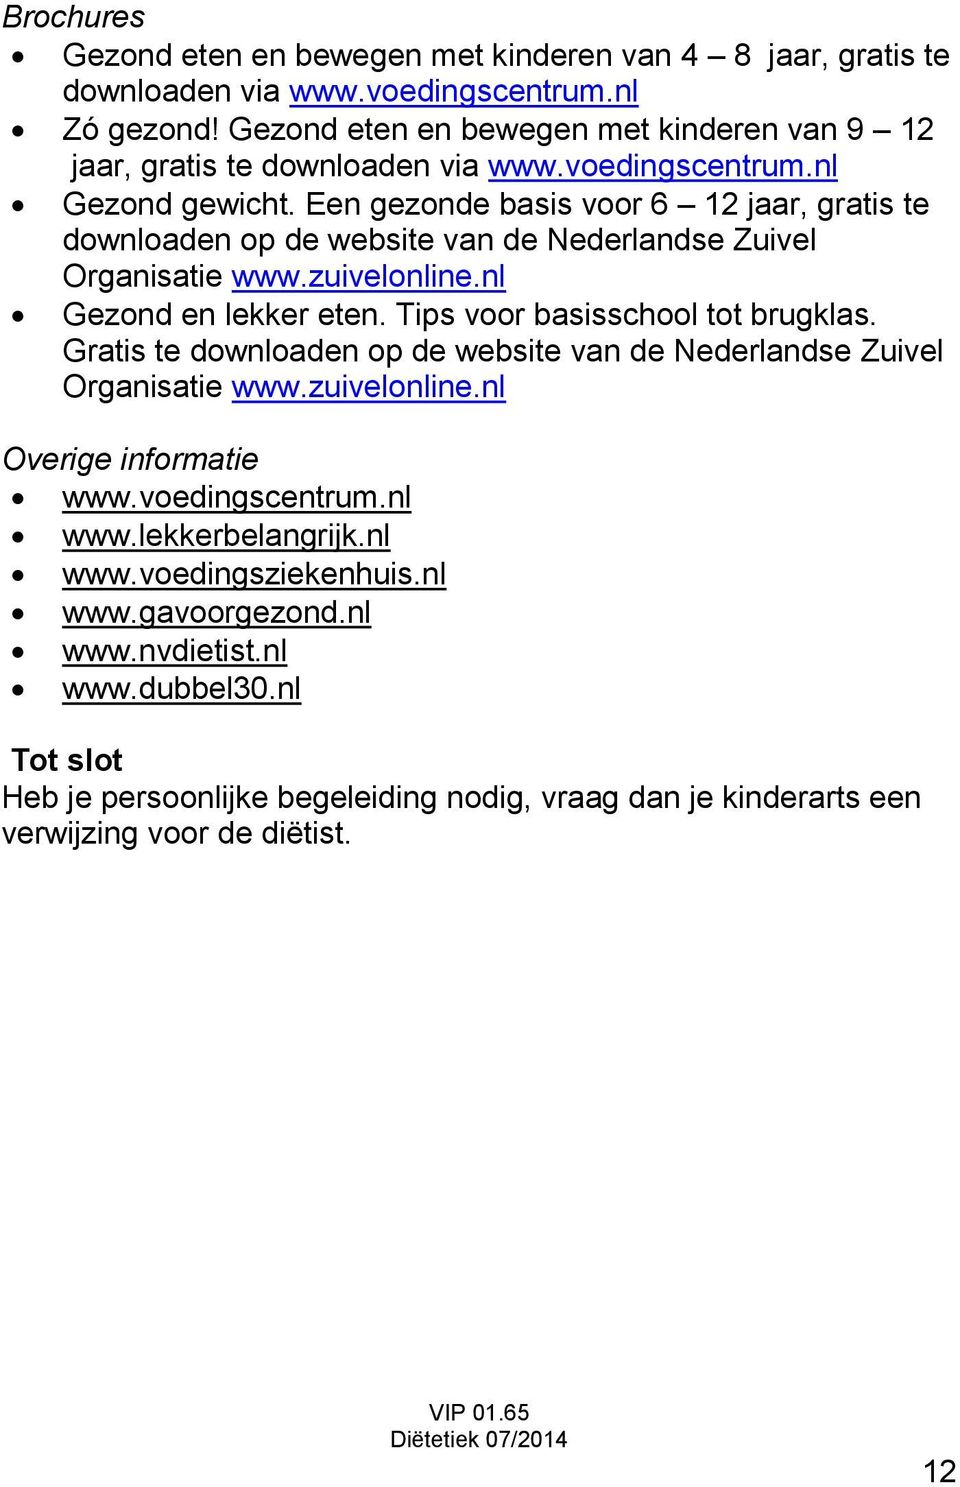 Een gezonde basis voor 6 12 jaar, gratis te downloaden op de website van de Nederlandse Zuivel Organisatie www.zuivelonline.nl Gezond en lekker eten. Tips voor basisschool tot brugklas.